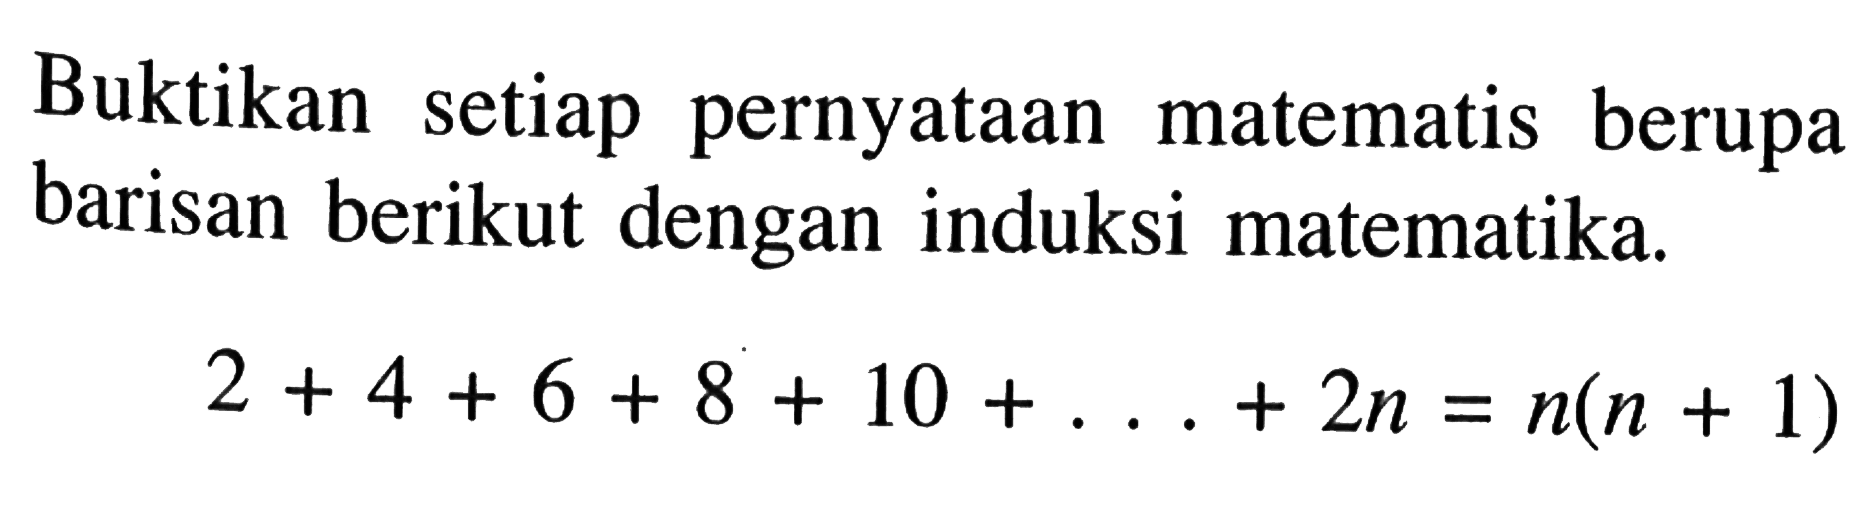 Buktikan setiap pernyataan matematis berupa barisan berikut dengan induksi matematika. 2+4+6+8+10+...+2n=n(n+1)